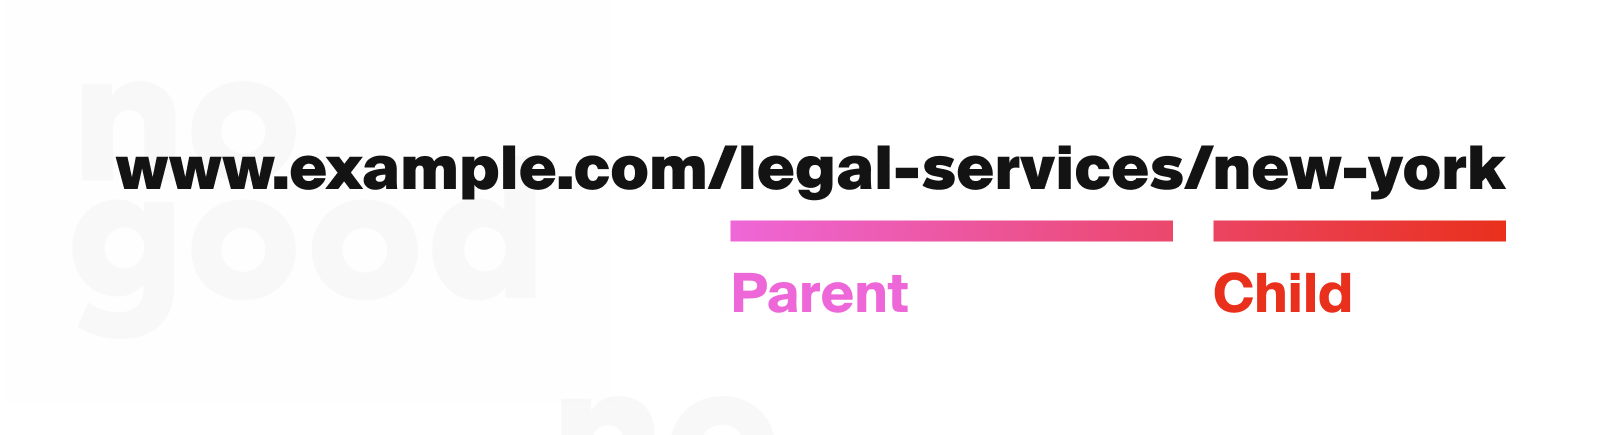 Parent-child page structure